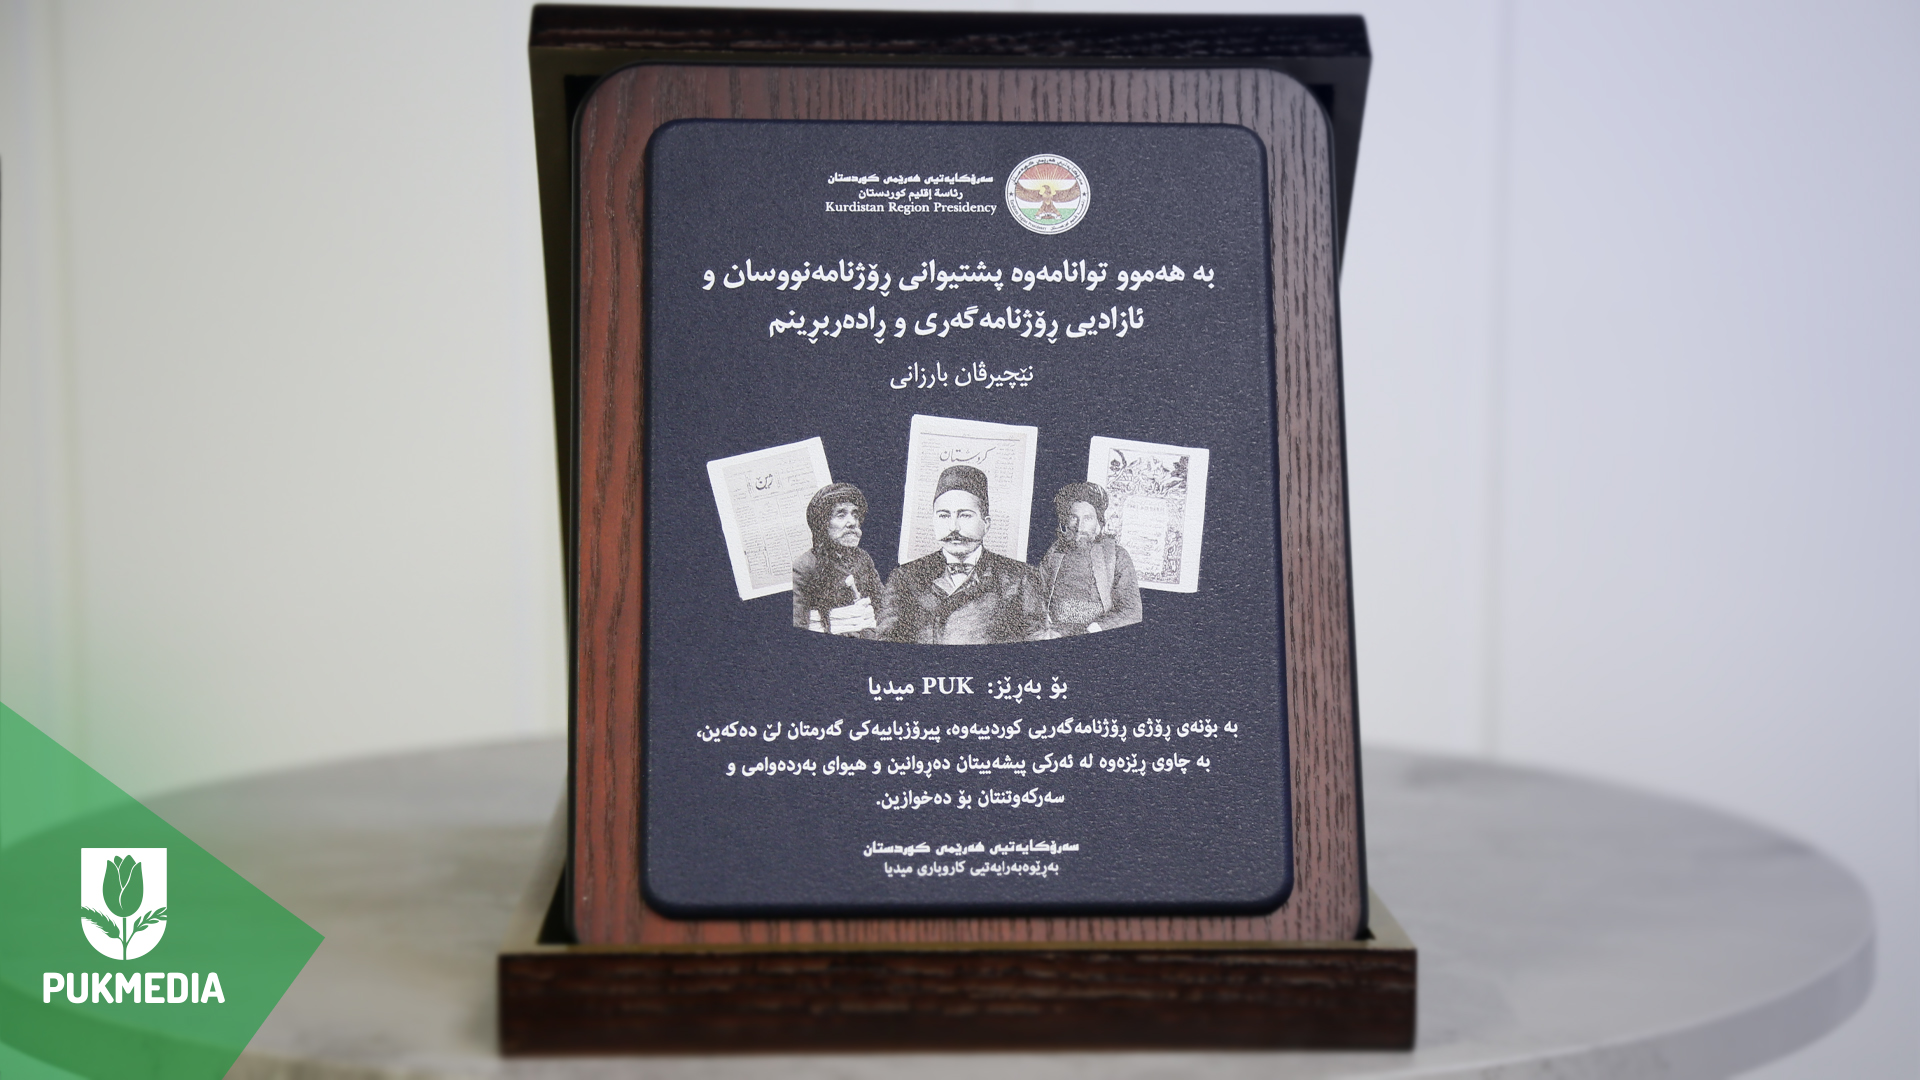 Kurdistan Region Presidency's Award to PUKMEDIA 